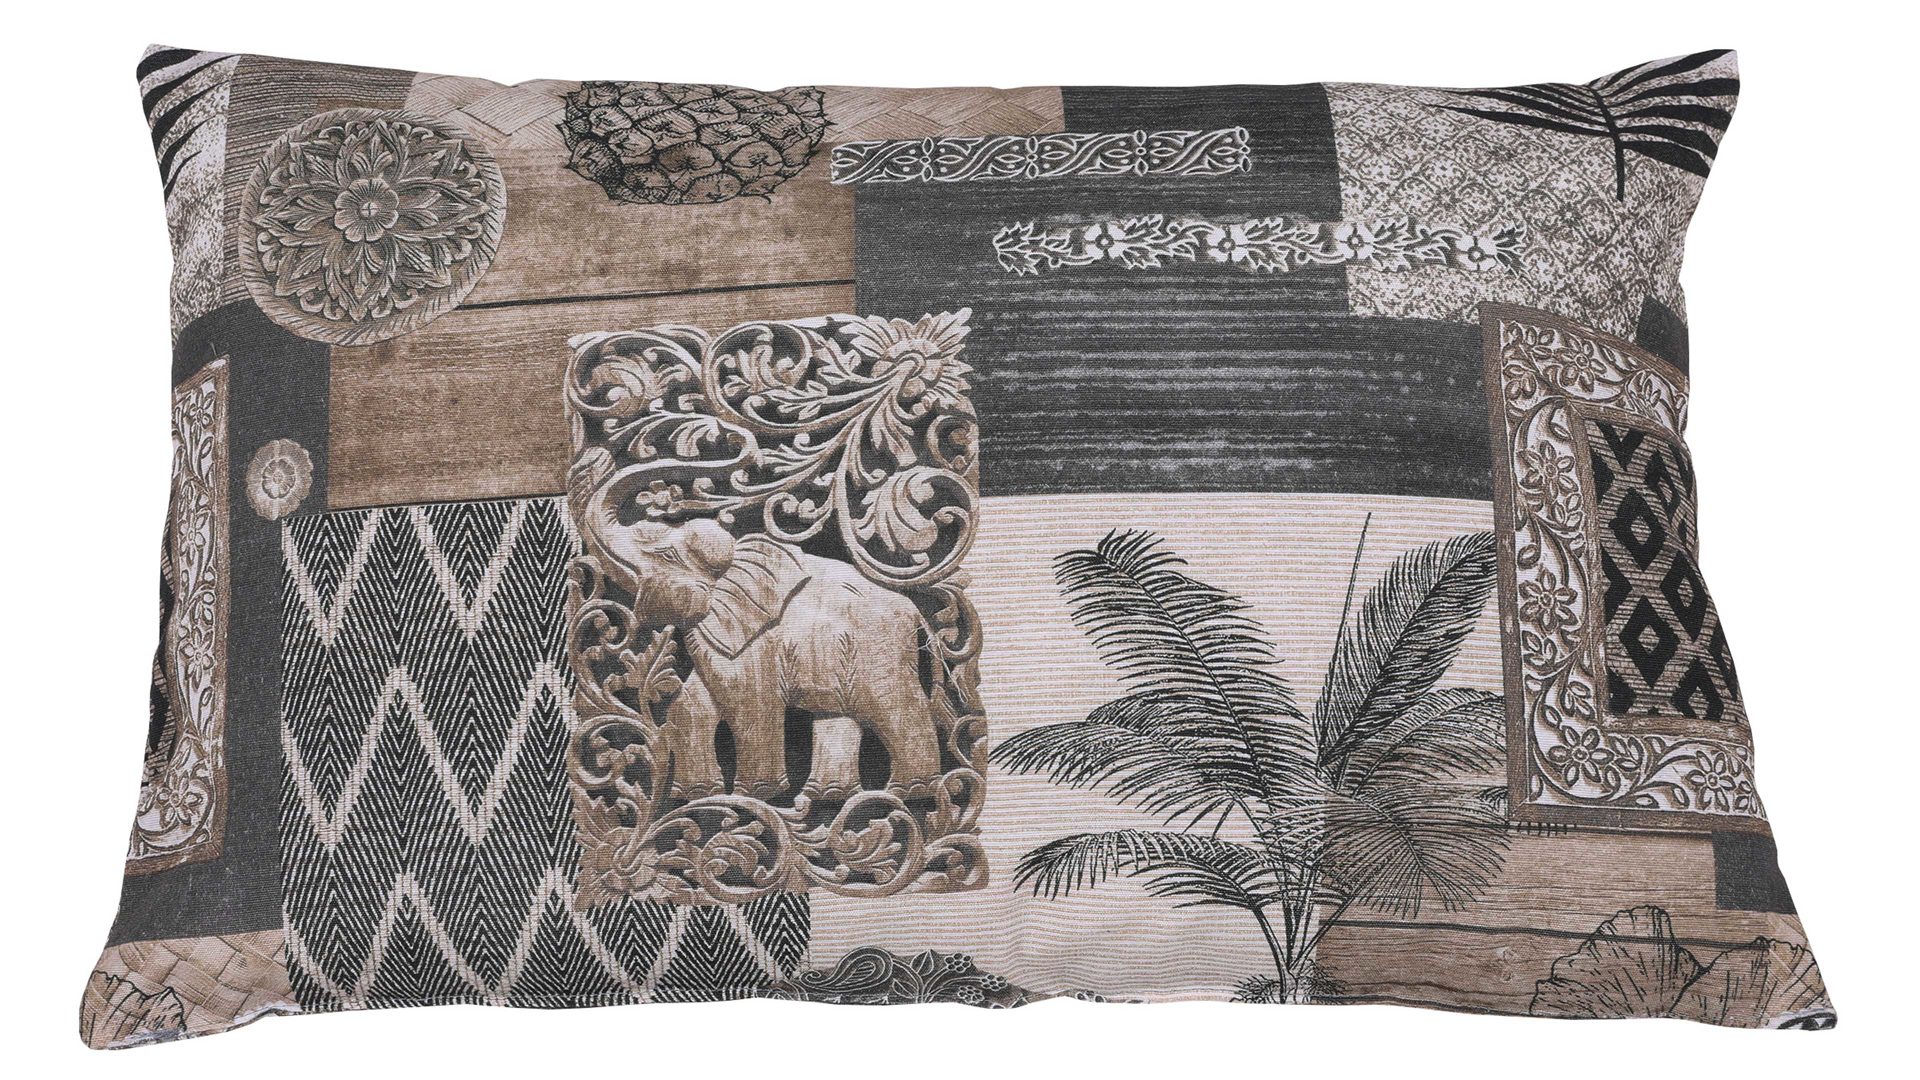 Einzelkissen Go-de textil aus Stoff in Braun GO-DE TEXTIL Auflagen Serie 19 - Zierkissen Boho Style Motiv - ca. 40 x 60 cm